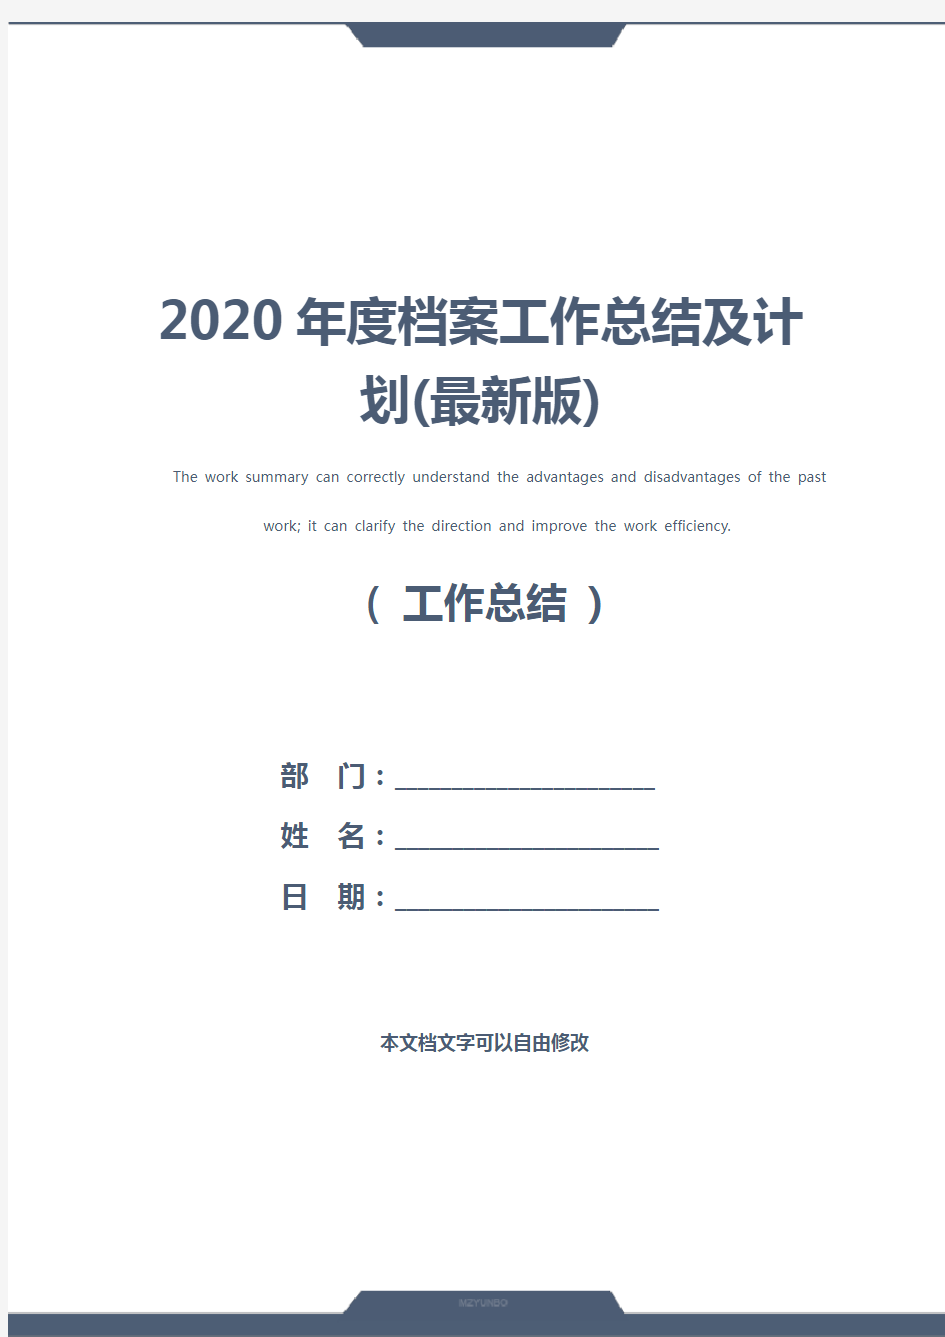 2020年度档案工作总结及计划(最新版)